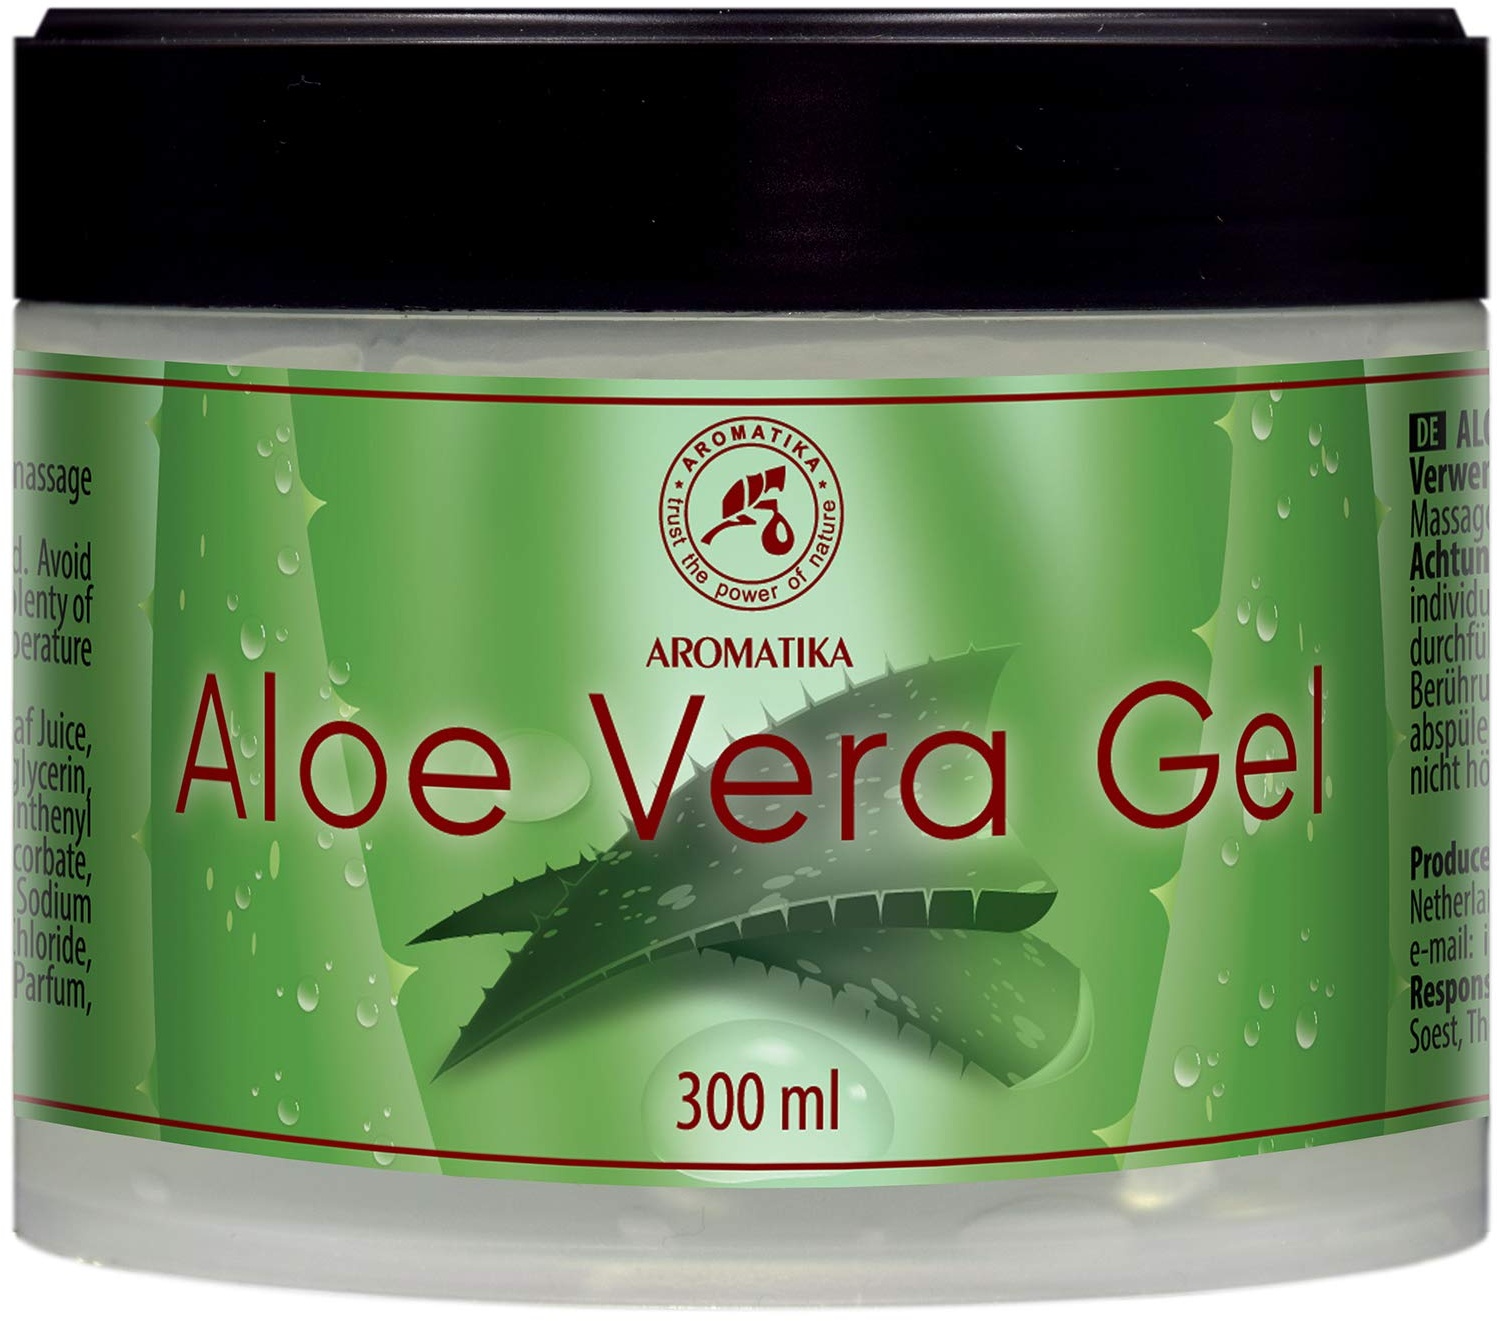 Aloe Vera Gel 300ml - Feuchtigkeitspflege für Gesicht - Haare und Körper - Beruhigendes Haut Gel - Kühlendes Gel für Alle Hauttypen - Aloe Gel für Trockene Haut - Rasiergel